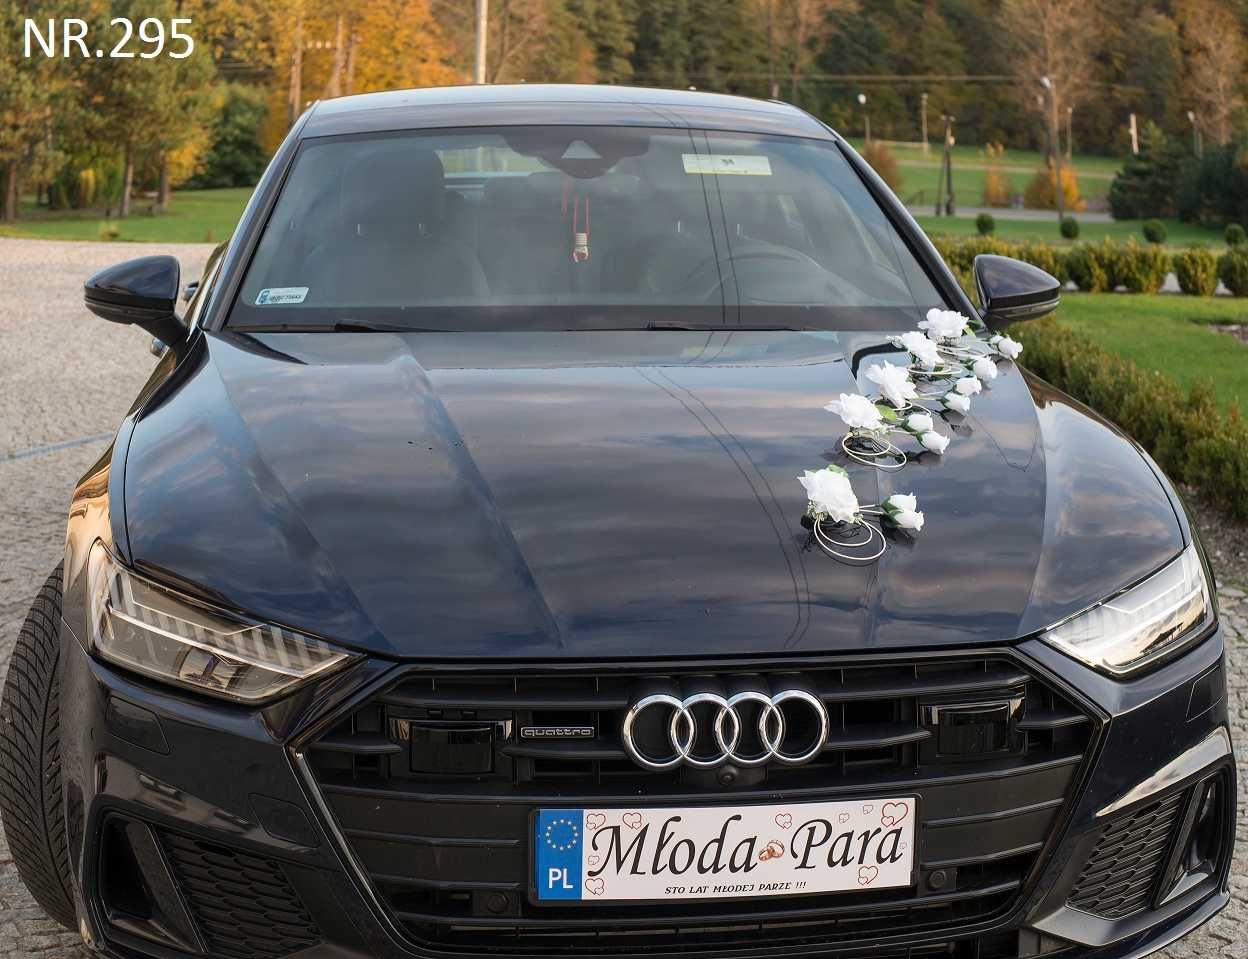 Dekoracja na samochód BIAŁA ozdoba na samochód-auto do ślubu 295